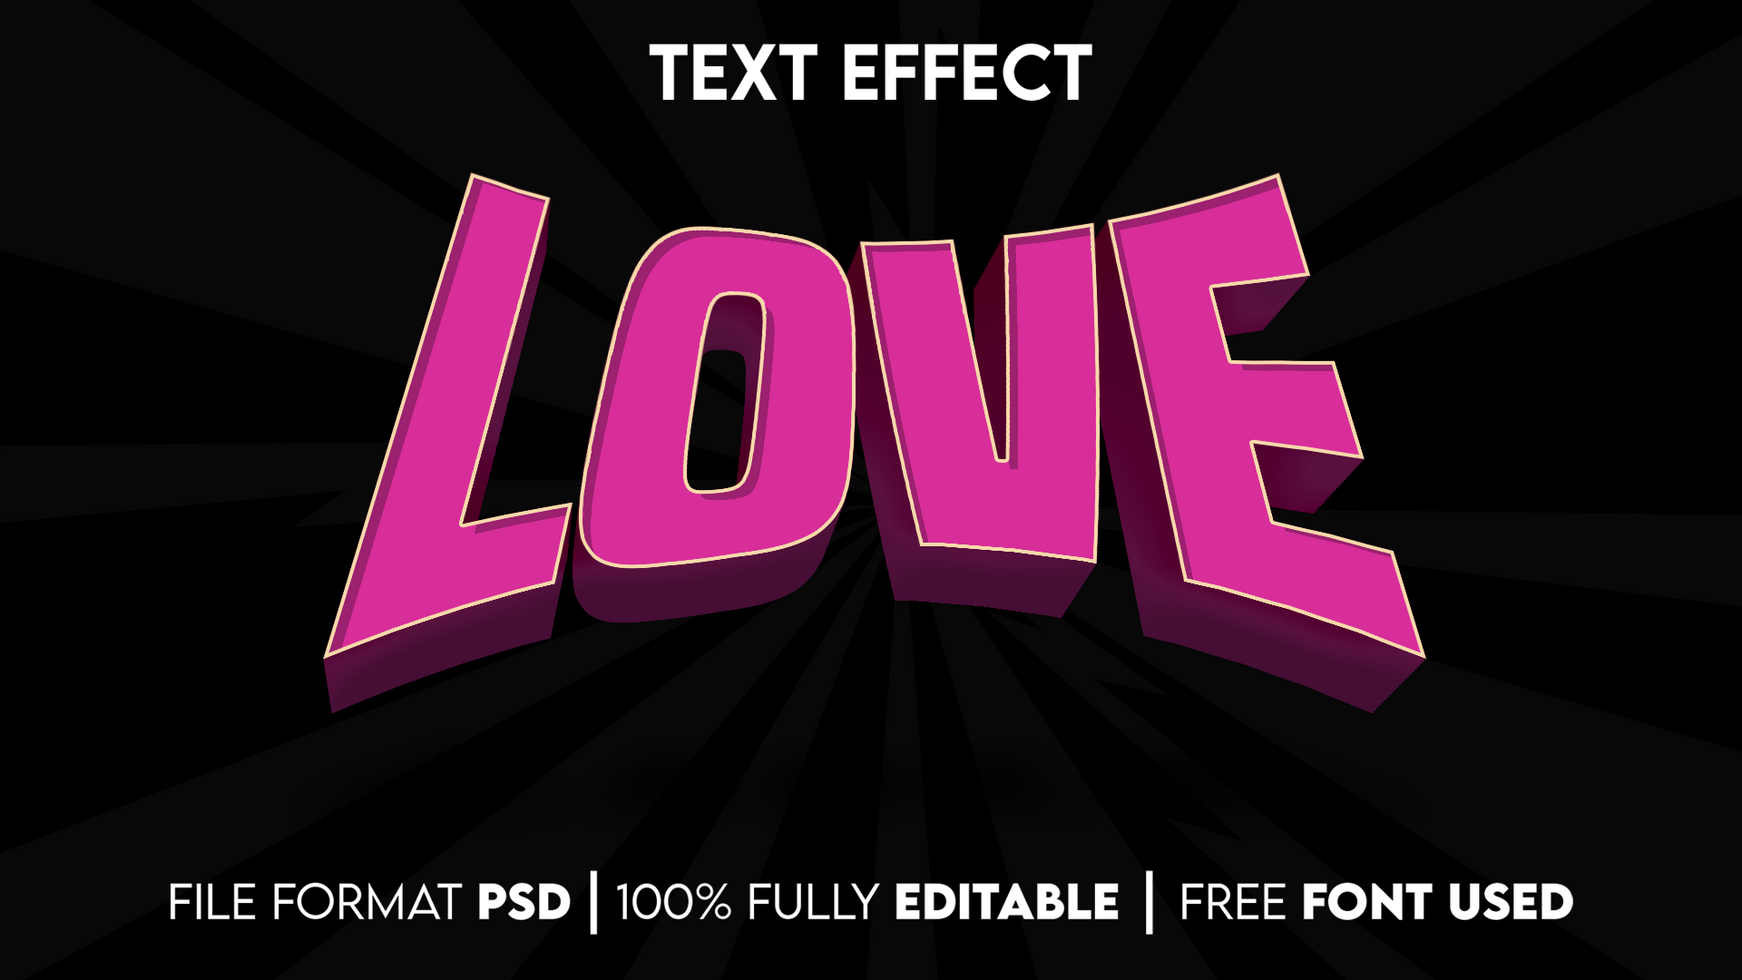 Love Editable Text Effect psd